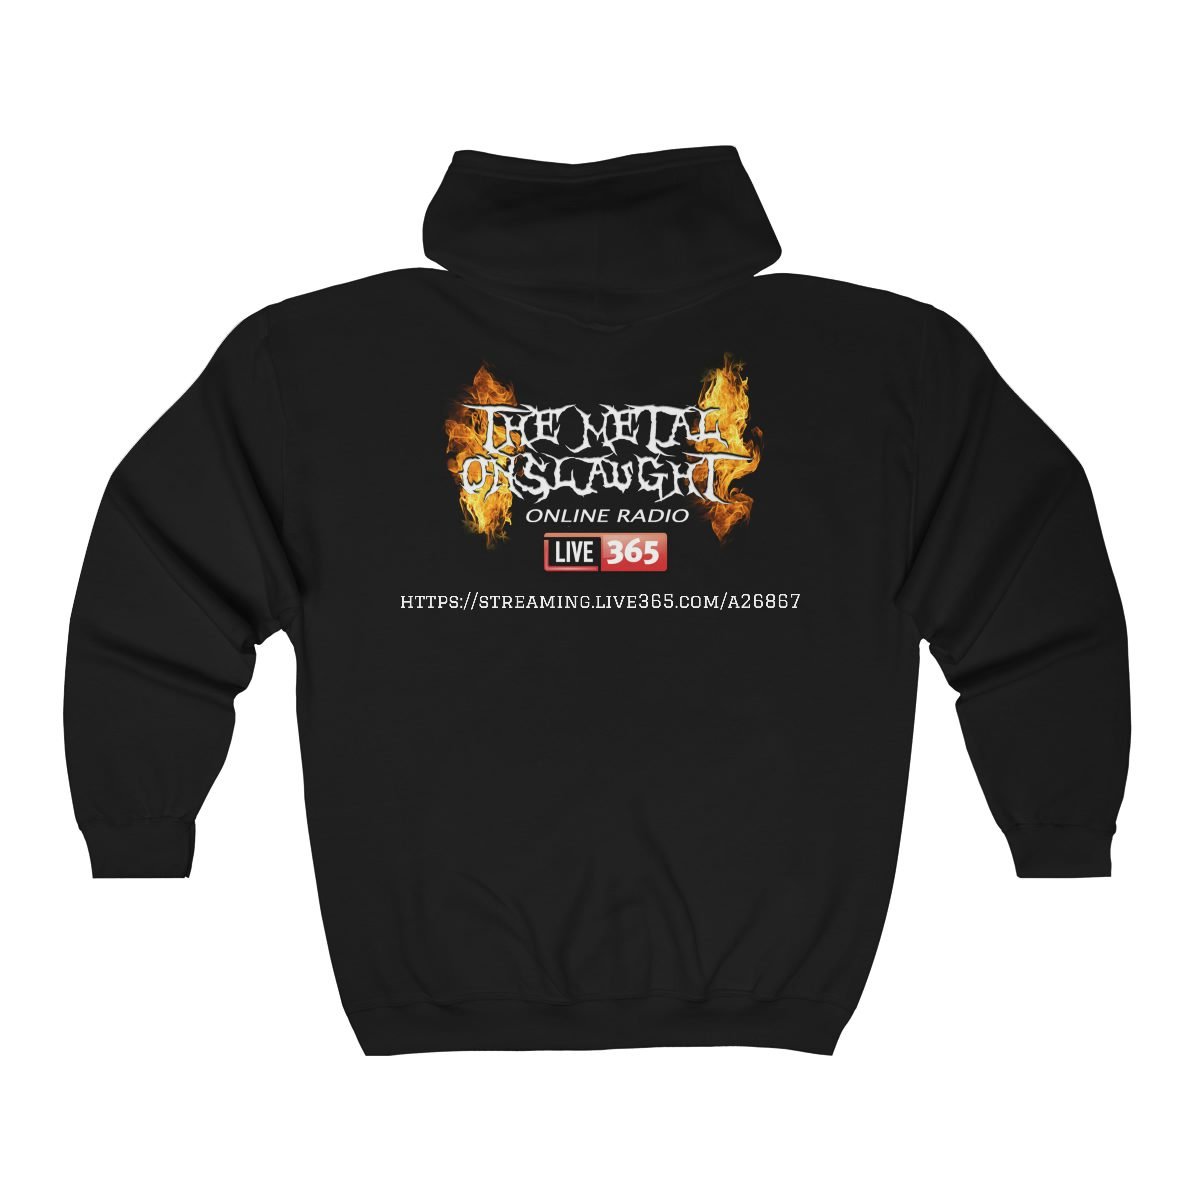 The Metal Priest with TMO Online Radio Back Full Zip Hooded Sweatshirt